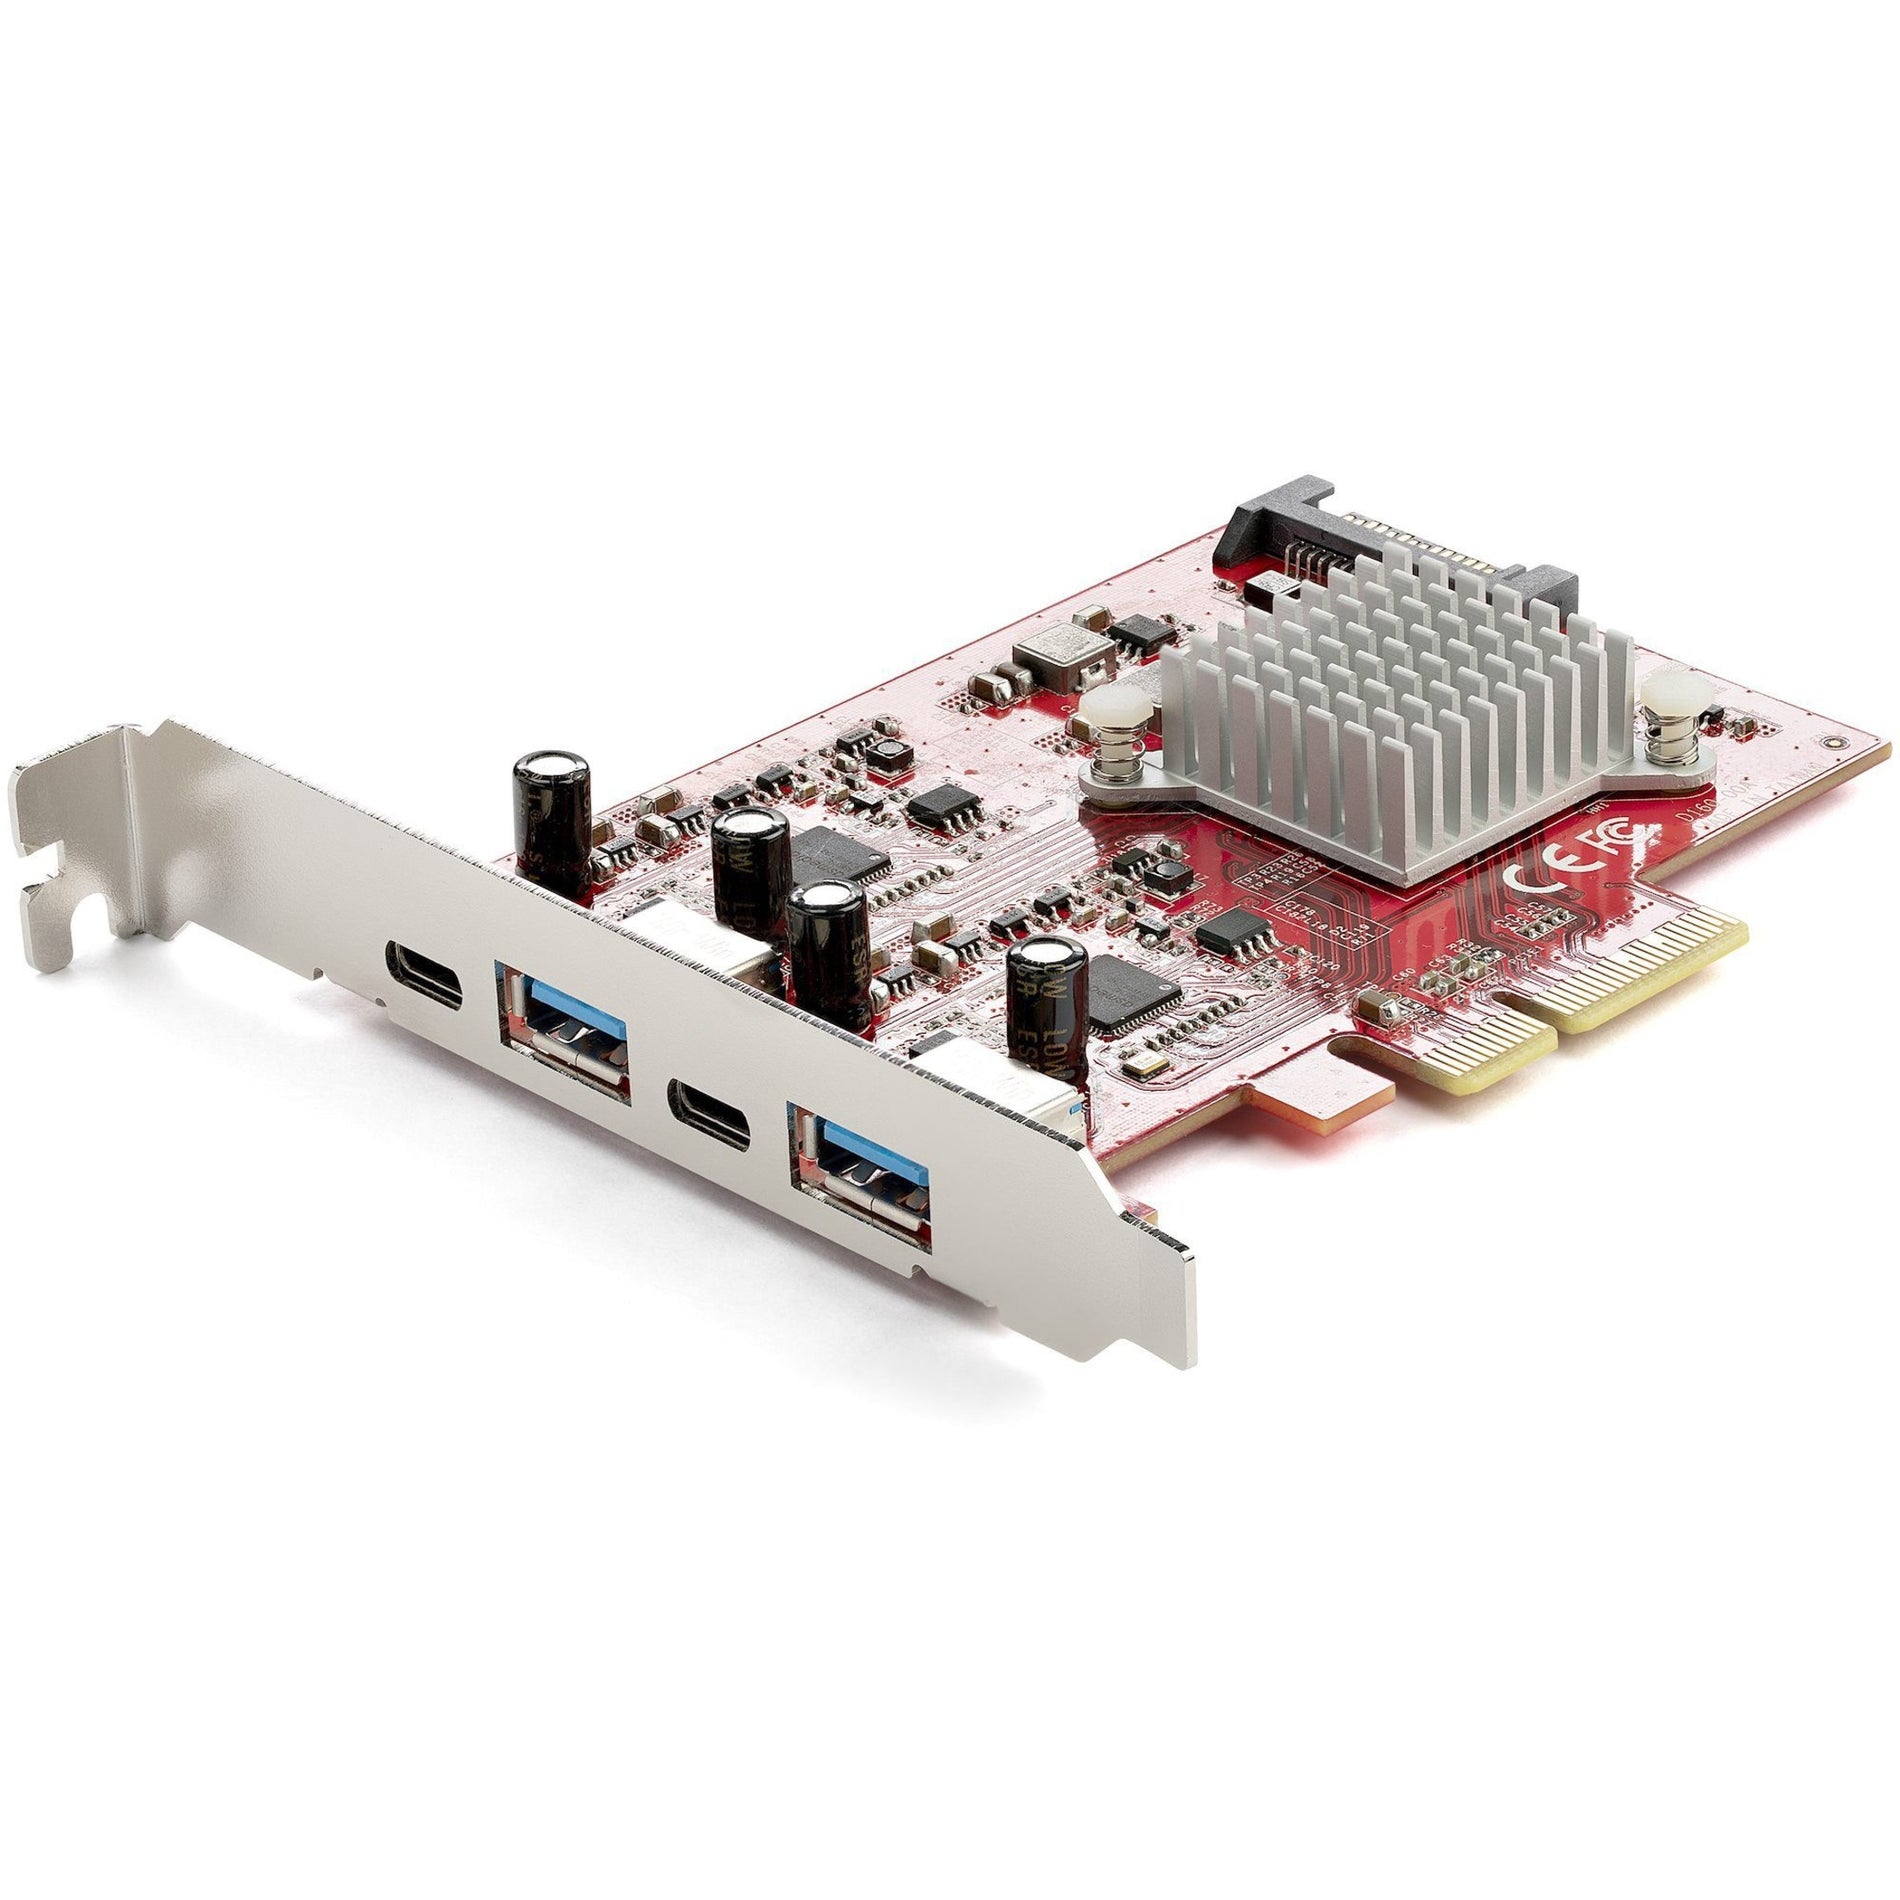 スタートレックドットコム PEXUSB312A2C2V PCIエクスプレスUSBカード、10Gbps速度の4ポートUSB PCIeカード、2つのUSB-Cポートと2つのUSB-Aポート